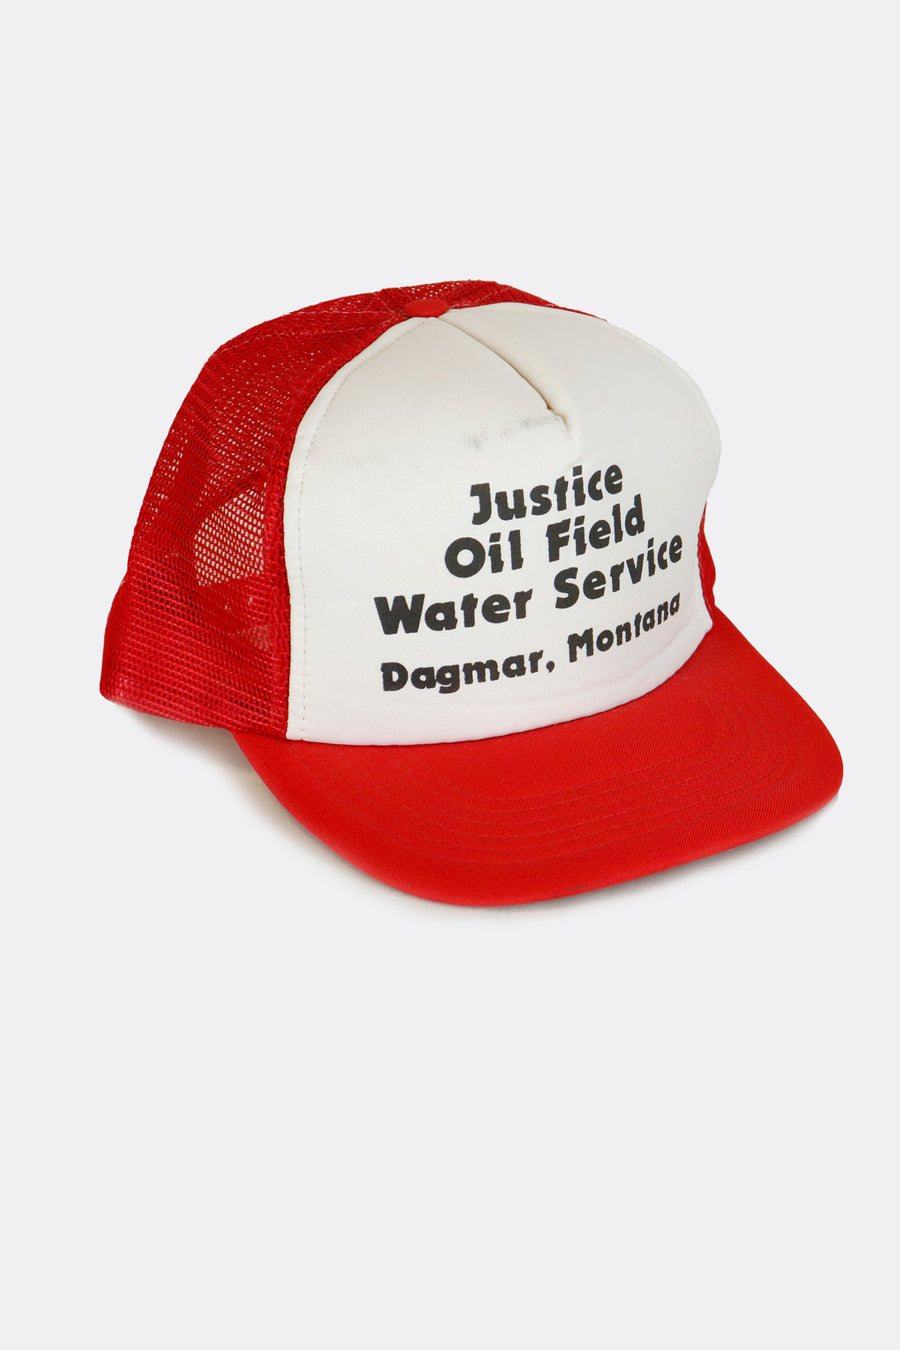 Vintage Justice Oil Field Water Service Snapback Trucker Hat